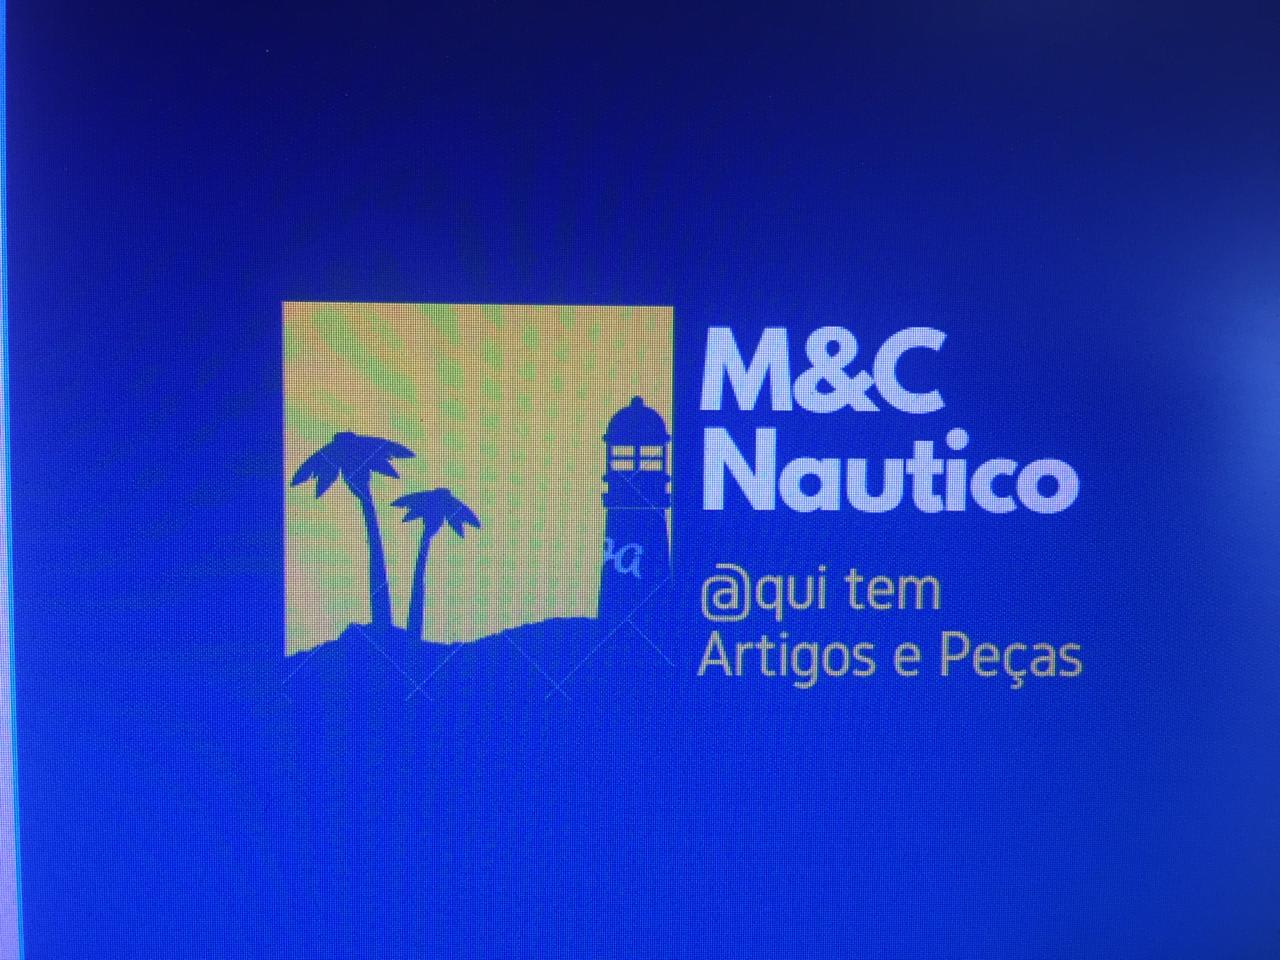 M&C Nautica